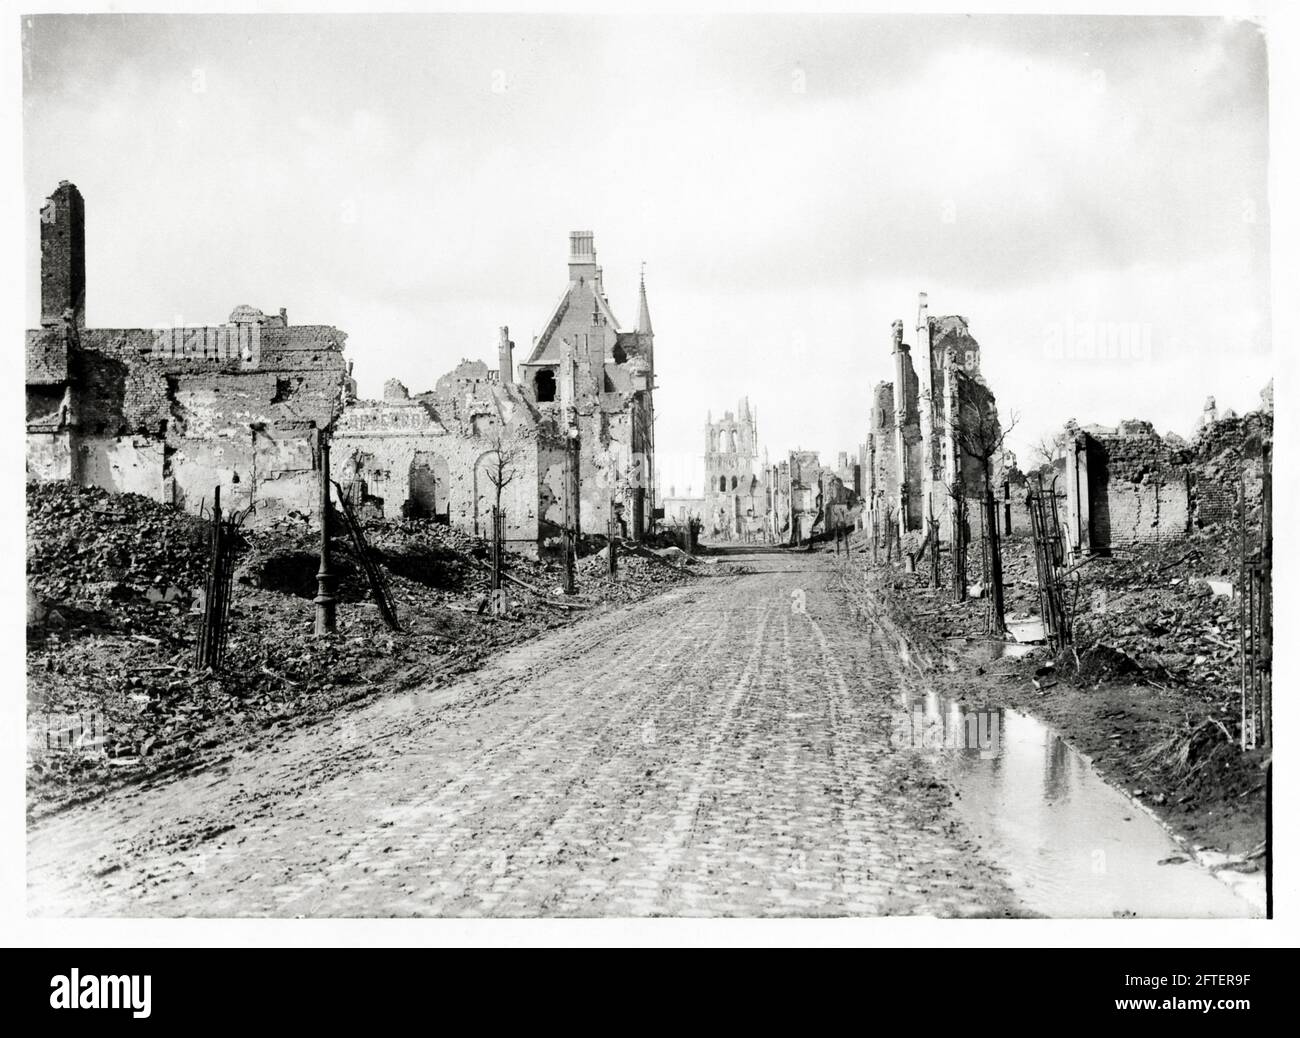 Première Guerre mondiale, première Guerre mondiale, Front occidental - ruines d'une des rues principales après bombardement, Ypres, Flandre Occidentale, Belgique Banque D'Images